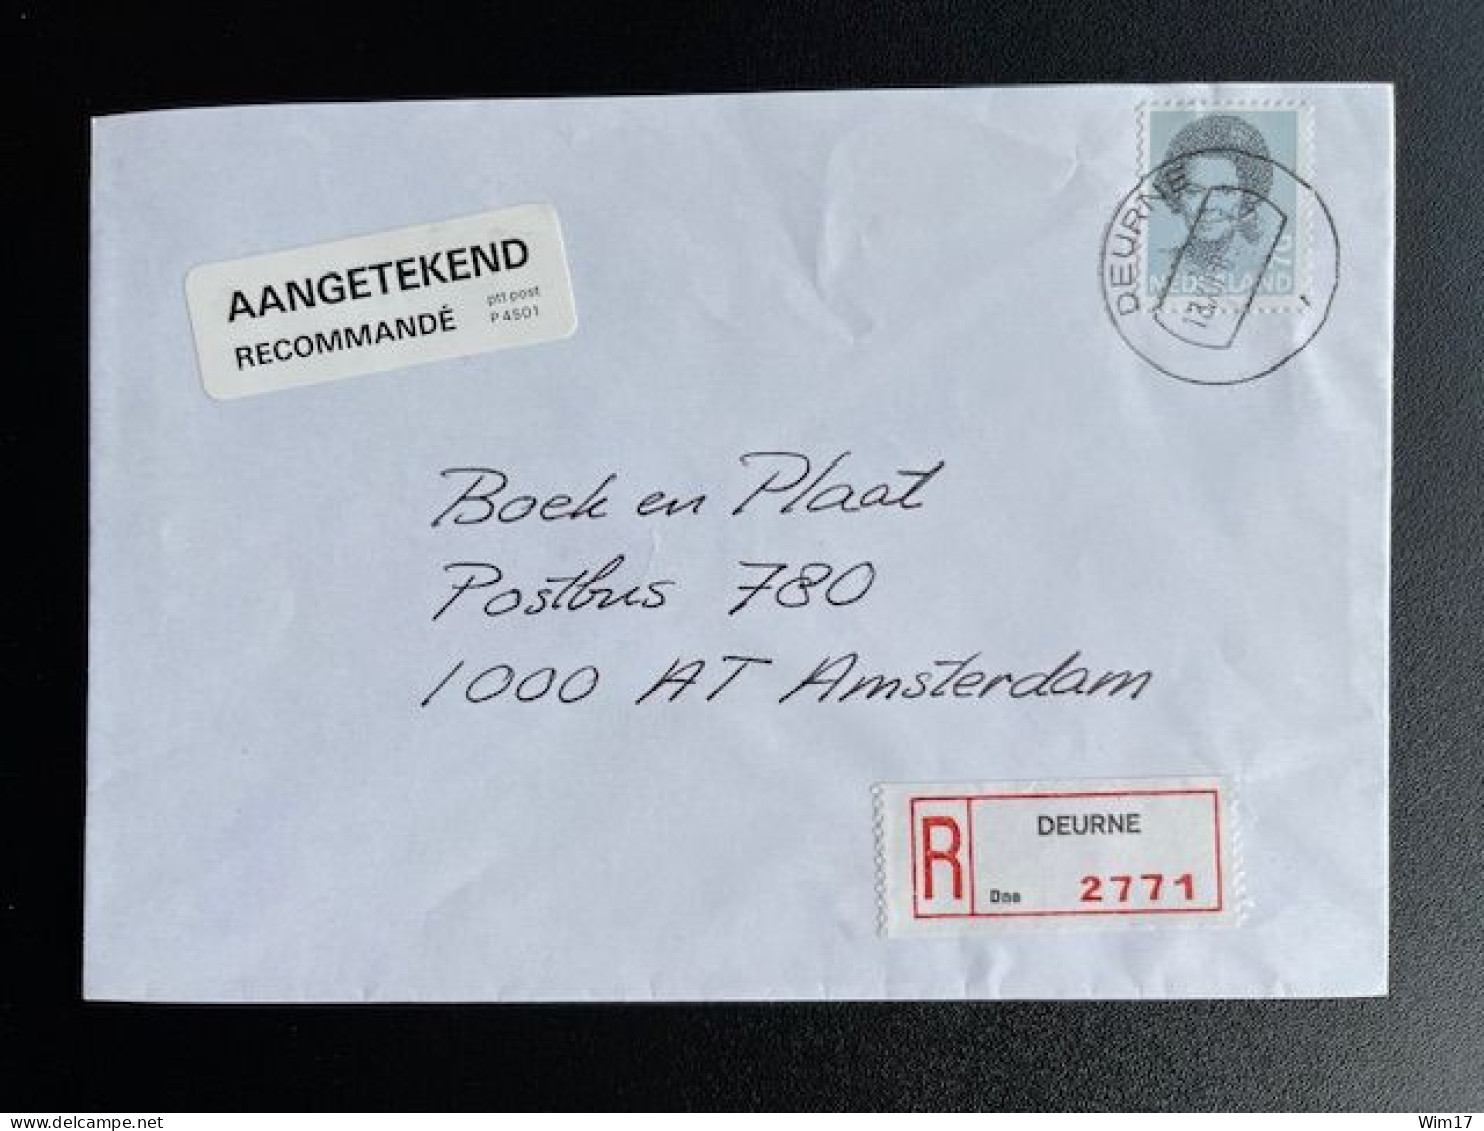 NETHERLANDS 1989 REGISTERED LETTER DEURNE TO AMSTERDAM 18-12-1989 NEDERLAND AANGETEKEND - Lettres & Documents